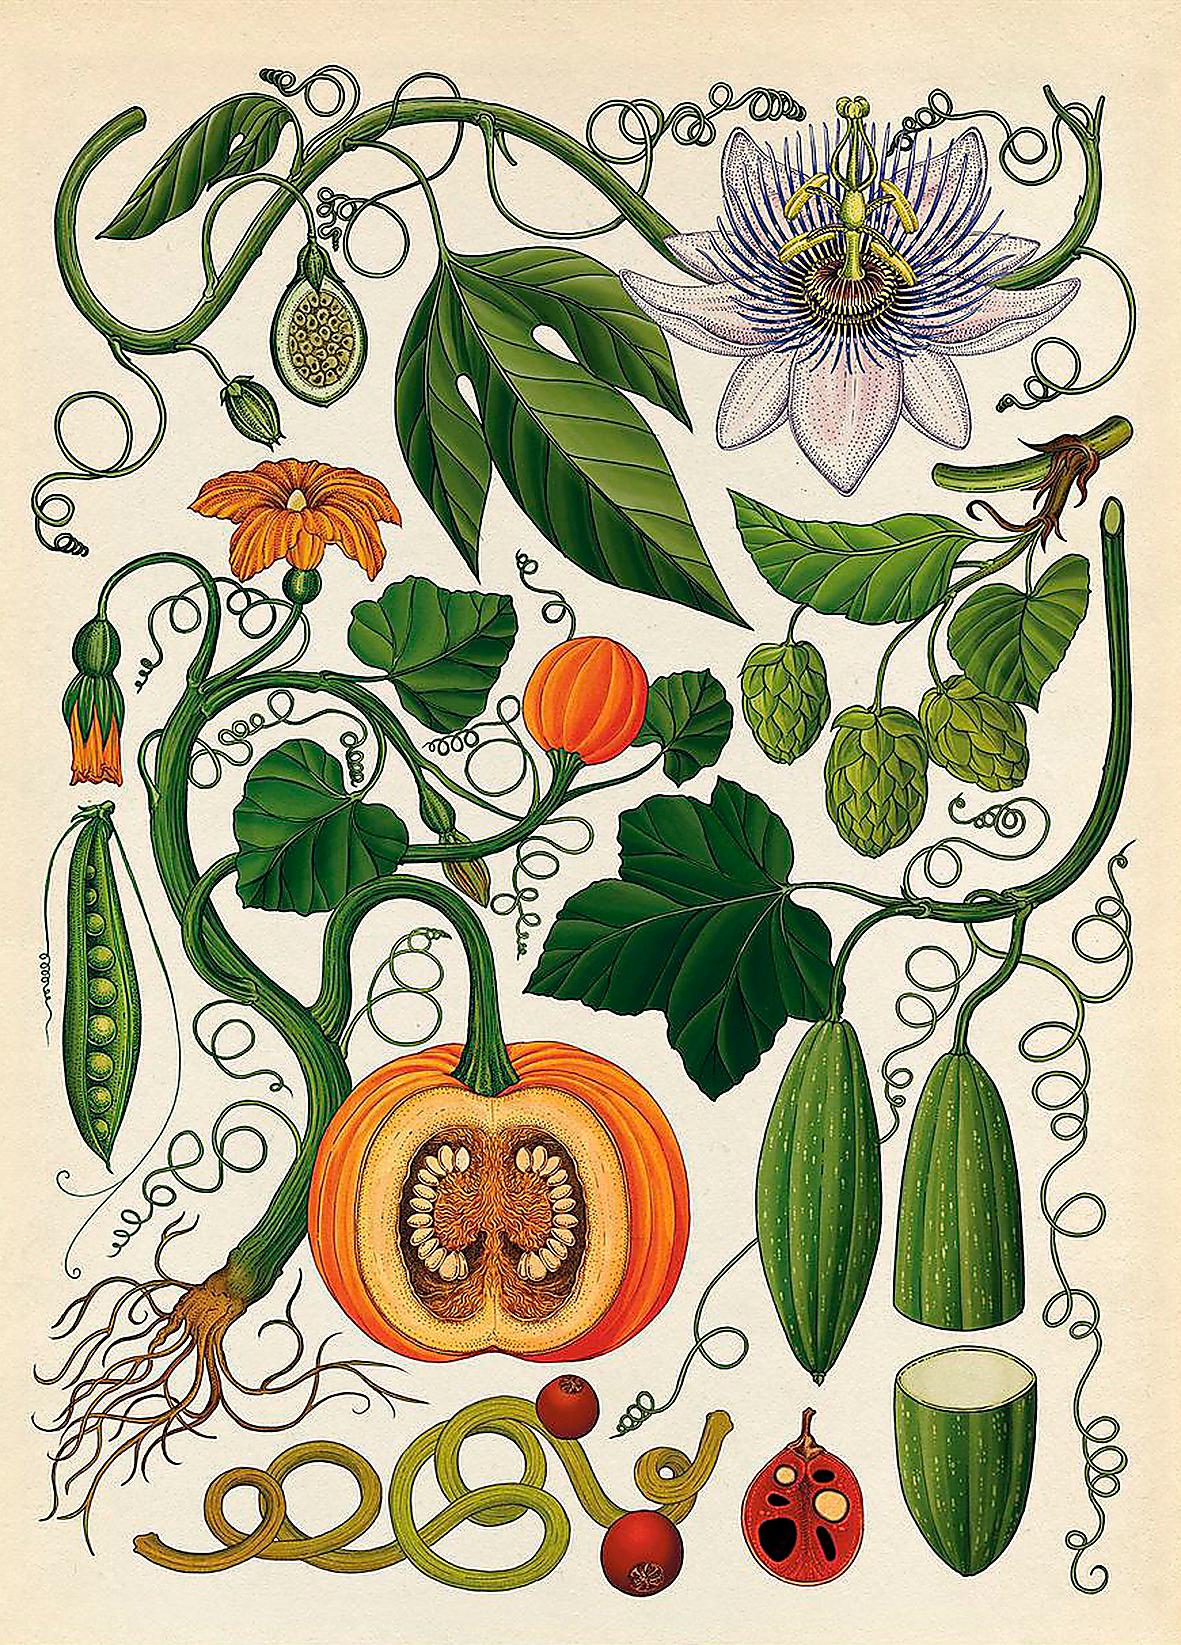 Katie Scotts illustrationer påminner om forna tiders skolplanscher. Här rankor och klätterväxter, bland annat humle, pumpa och passionsfrukt.